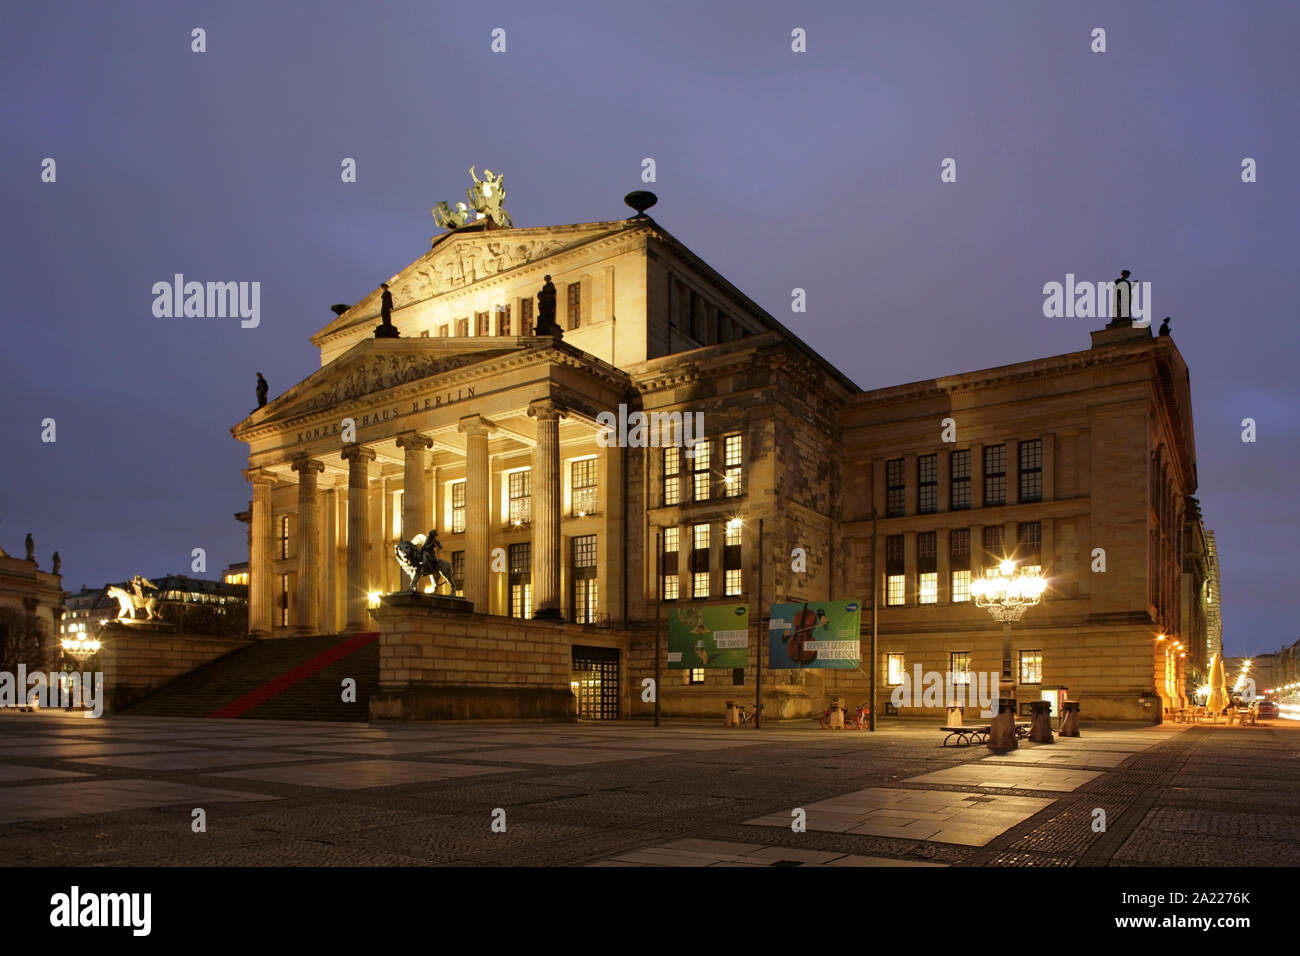 The Konzerthaus Berlin, Gendarmenmarkt, Berlin, Germany. Stock Photo